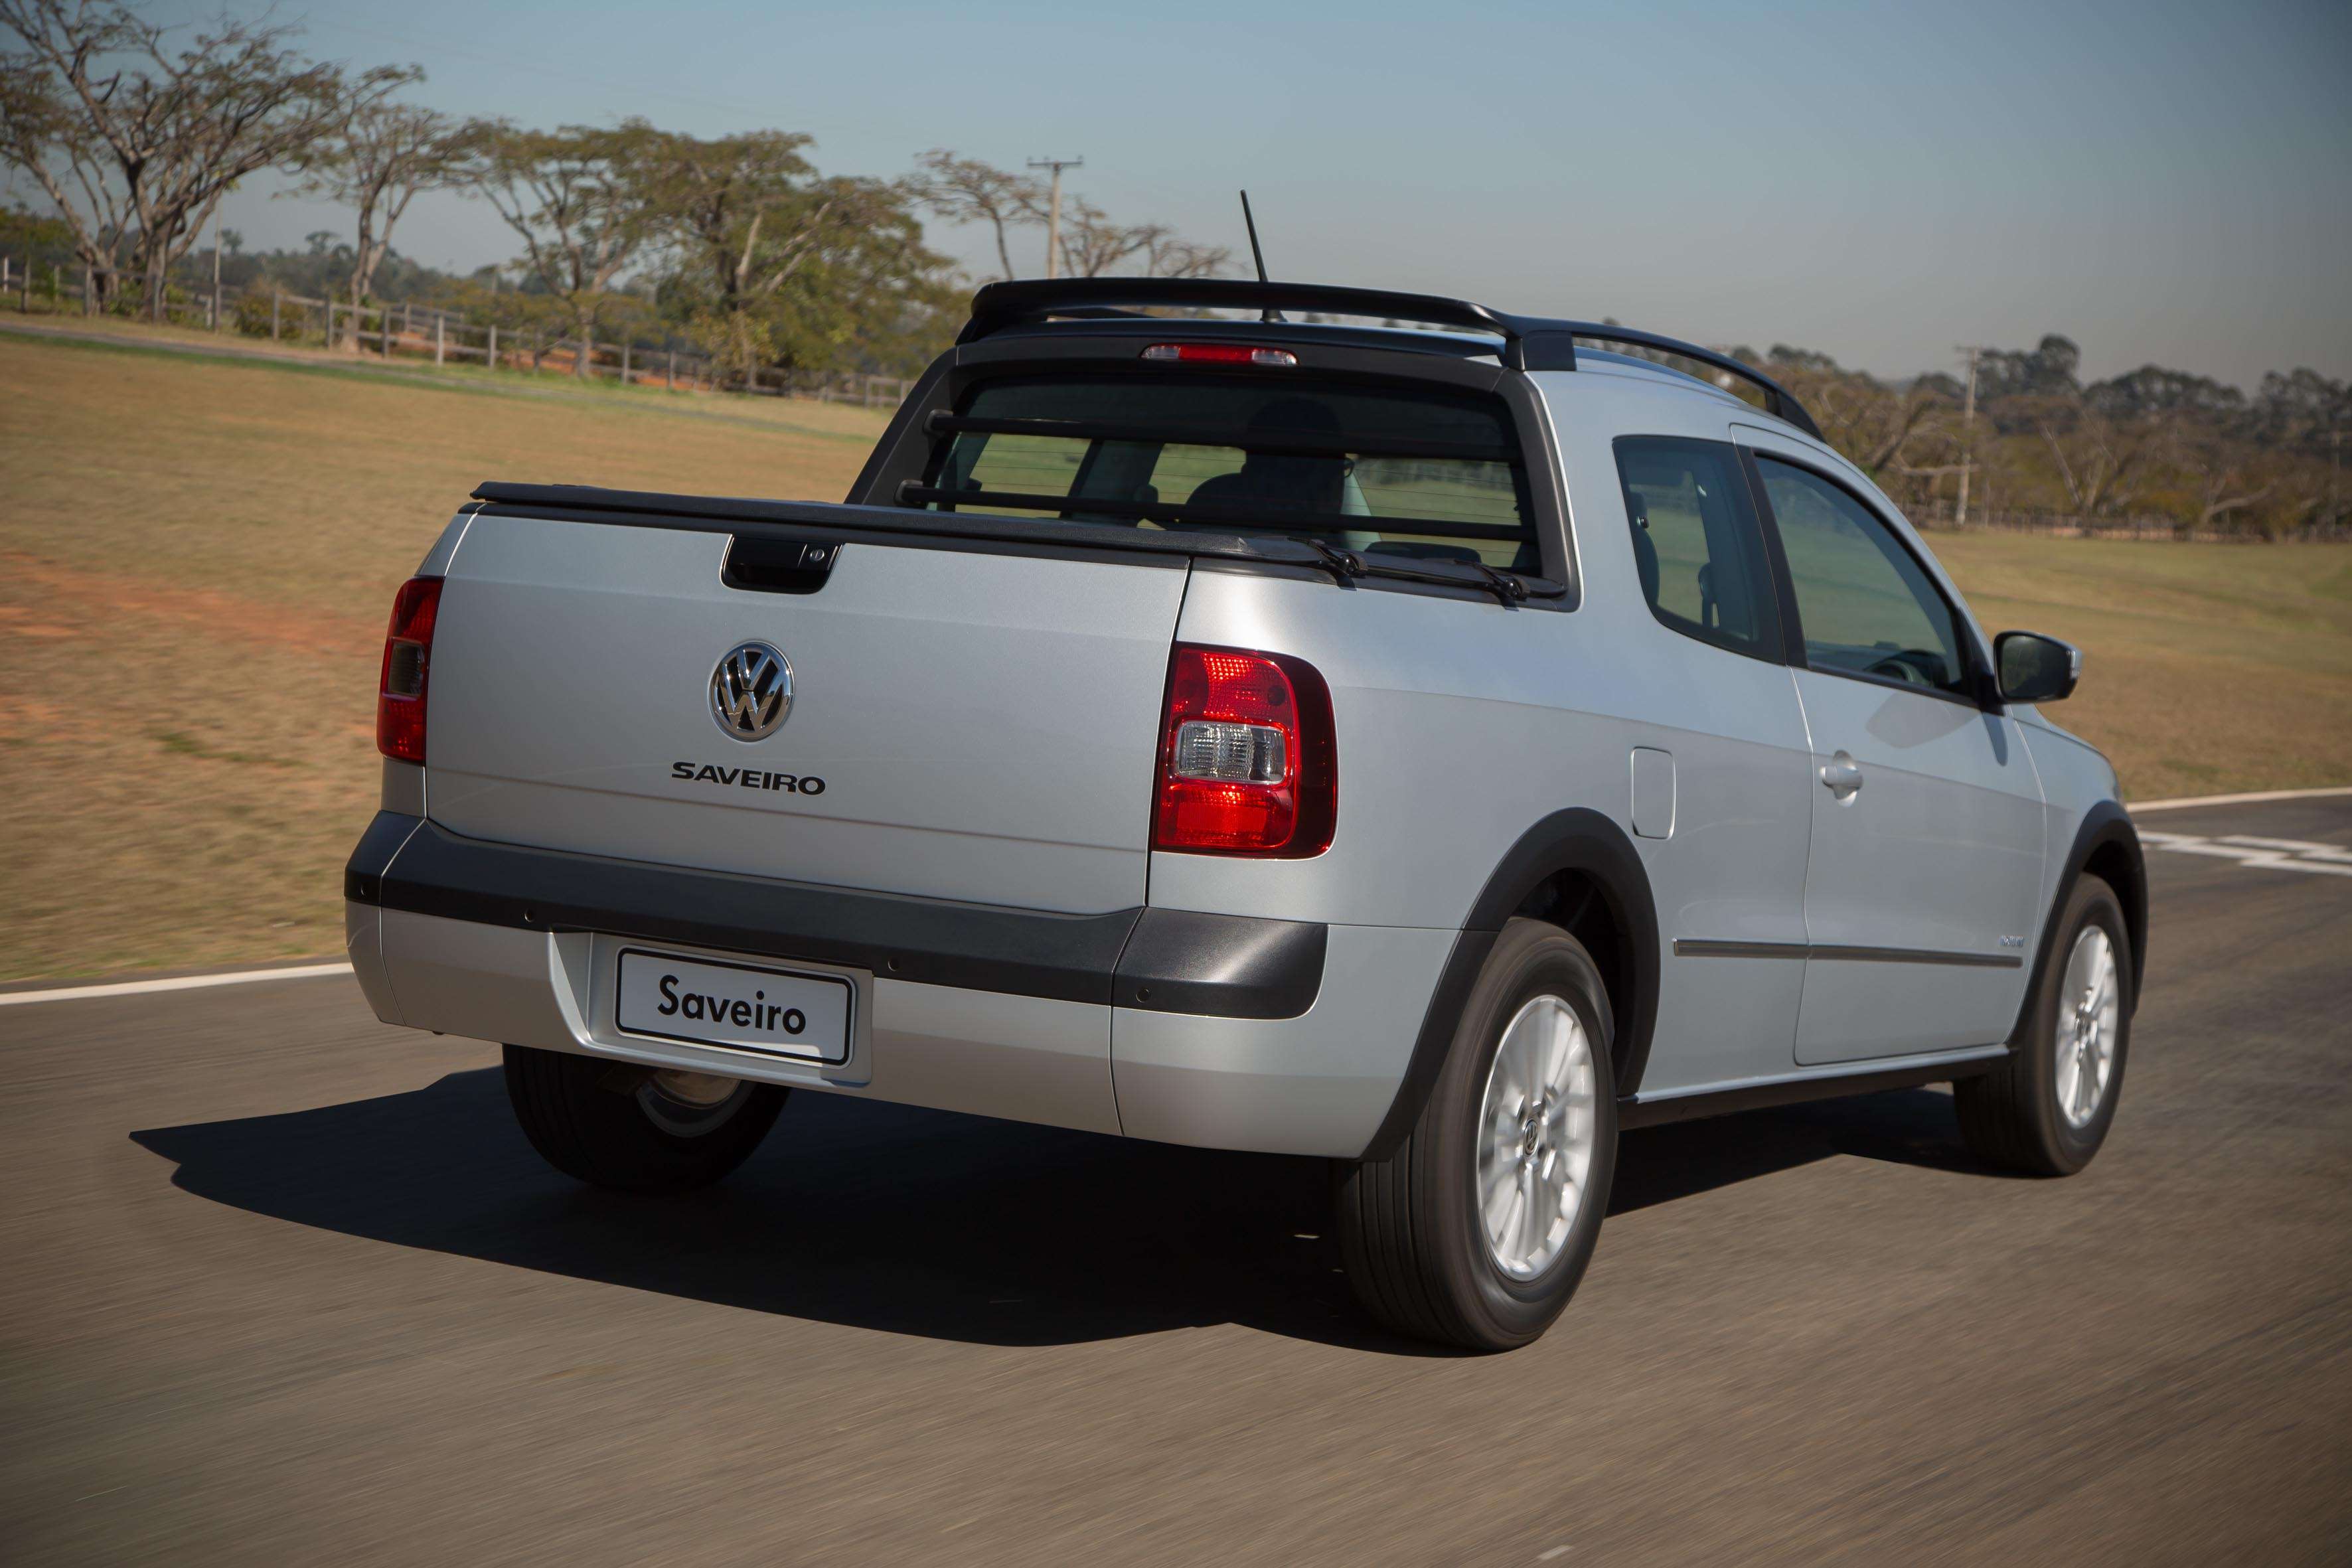 VW Saveiro cabine dupla acomoda cinco ocupantes - 28/08/14 - MOTOR - Jornal  Cruzeiro do Sul